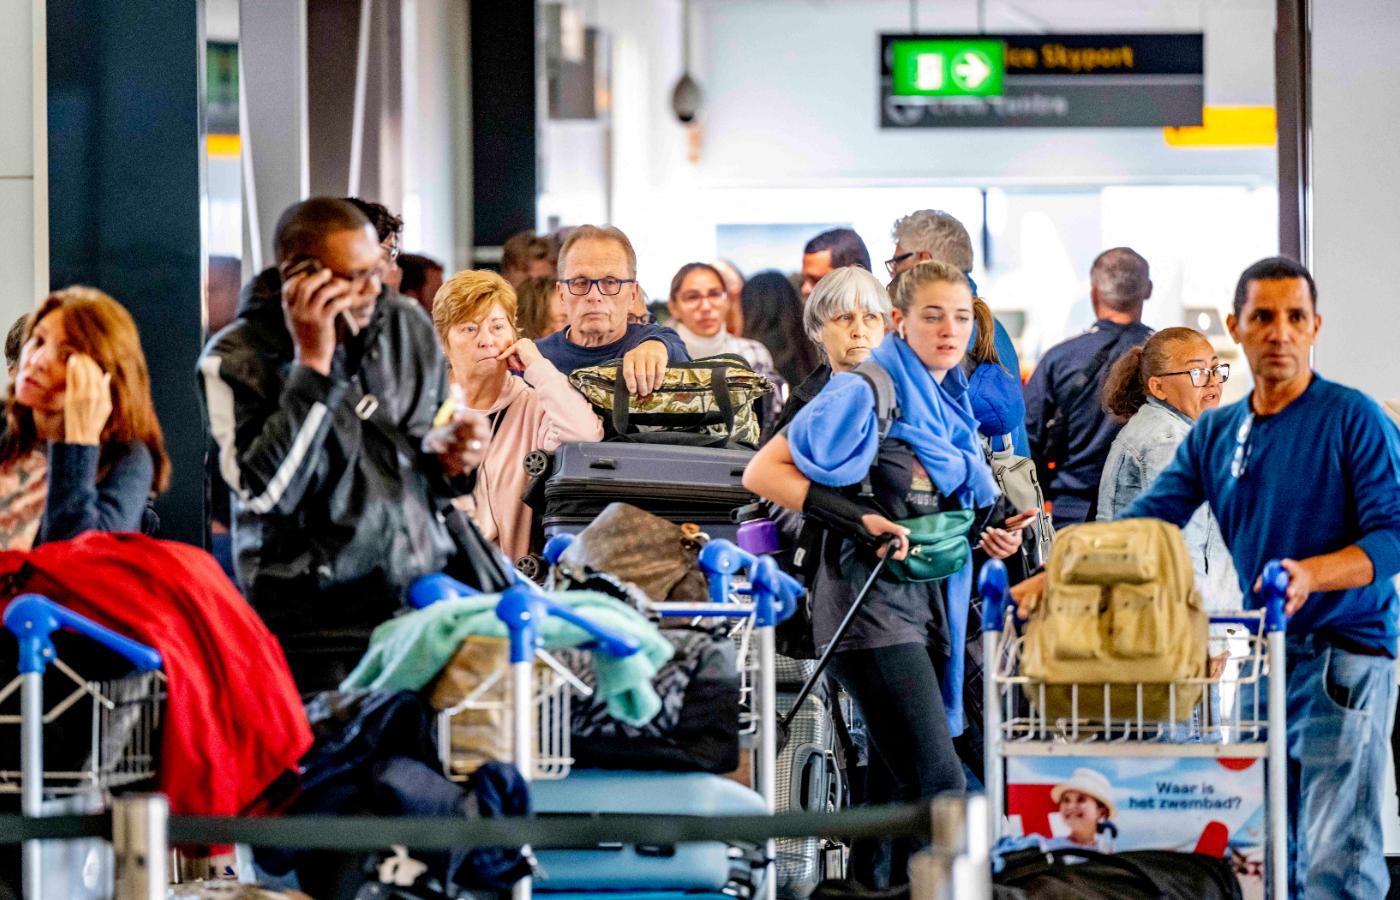 Tłum pasażerów na lotnisku Schiphol w Amsterdamie